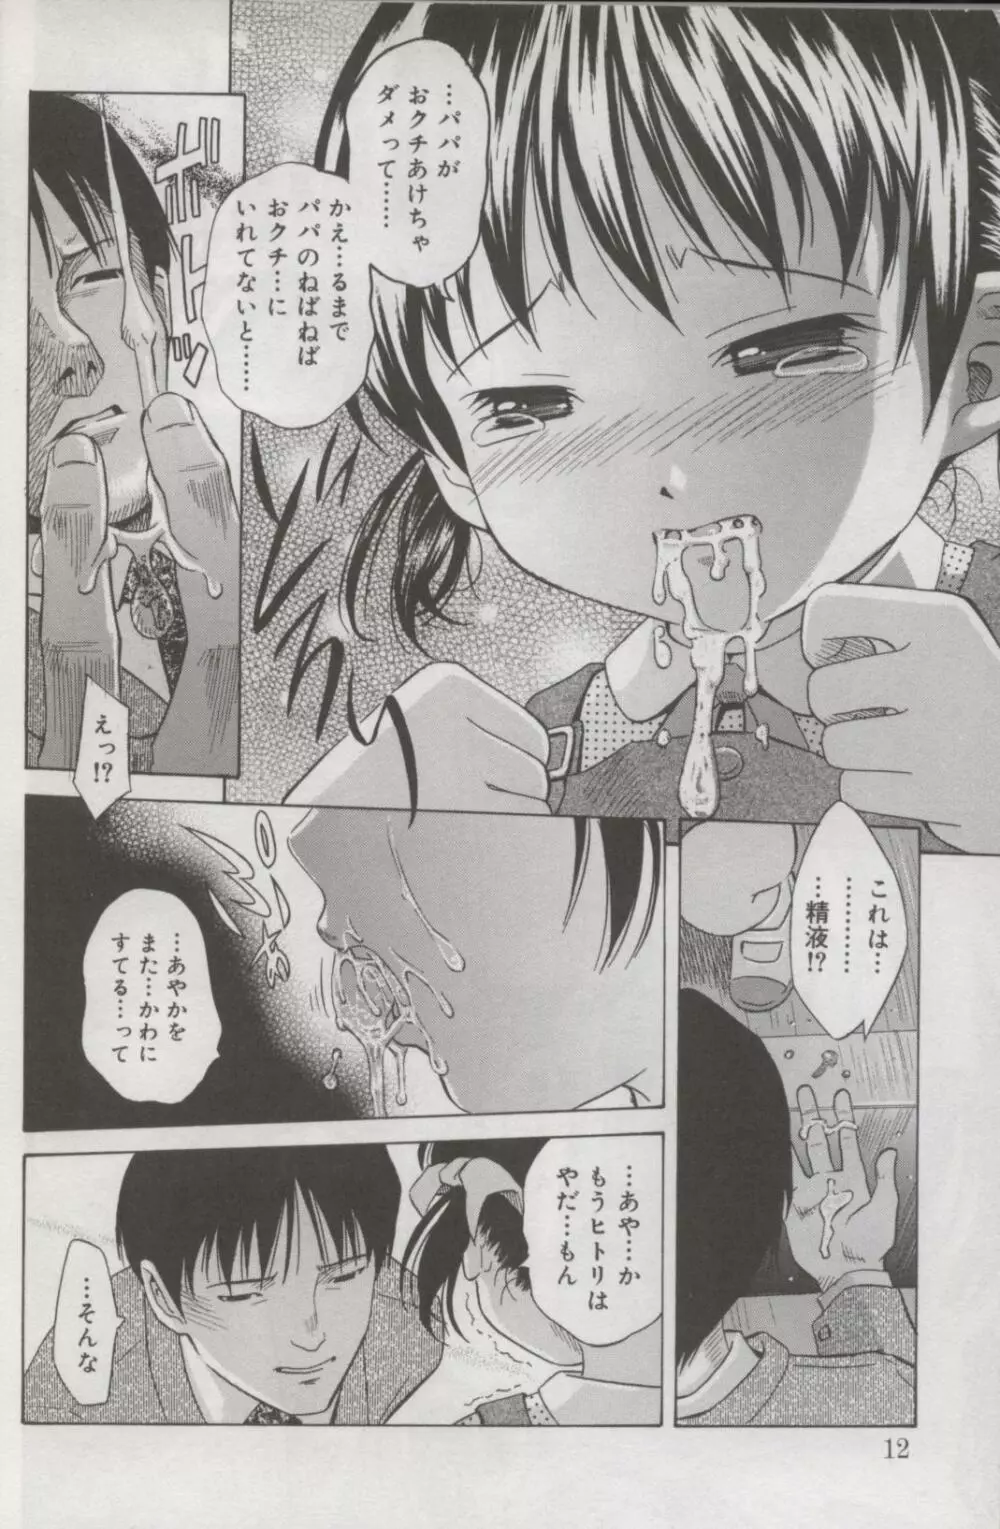 Kotori-kan Vol 3 9ページ